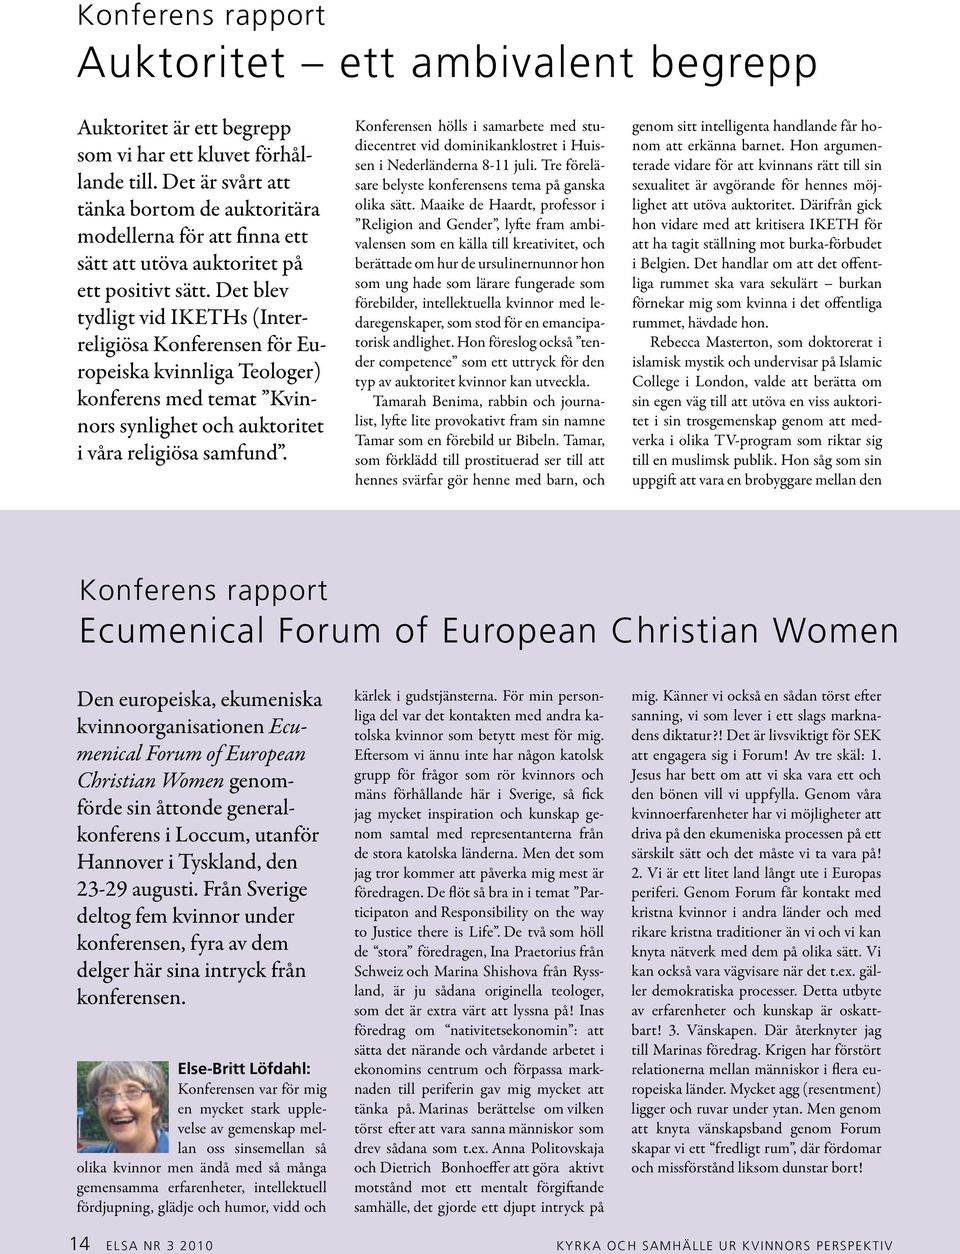 Det blev tydligt vid IKETHs (Interreligiösa Konferensen för Europeiska kvinnliga Teologer) konferens med temat Kvinnors synlighet och auktoritet i våra religiösa samfund.